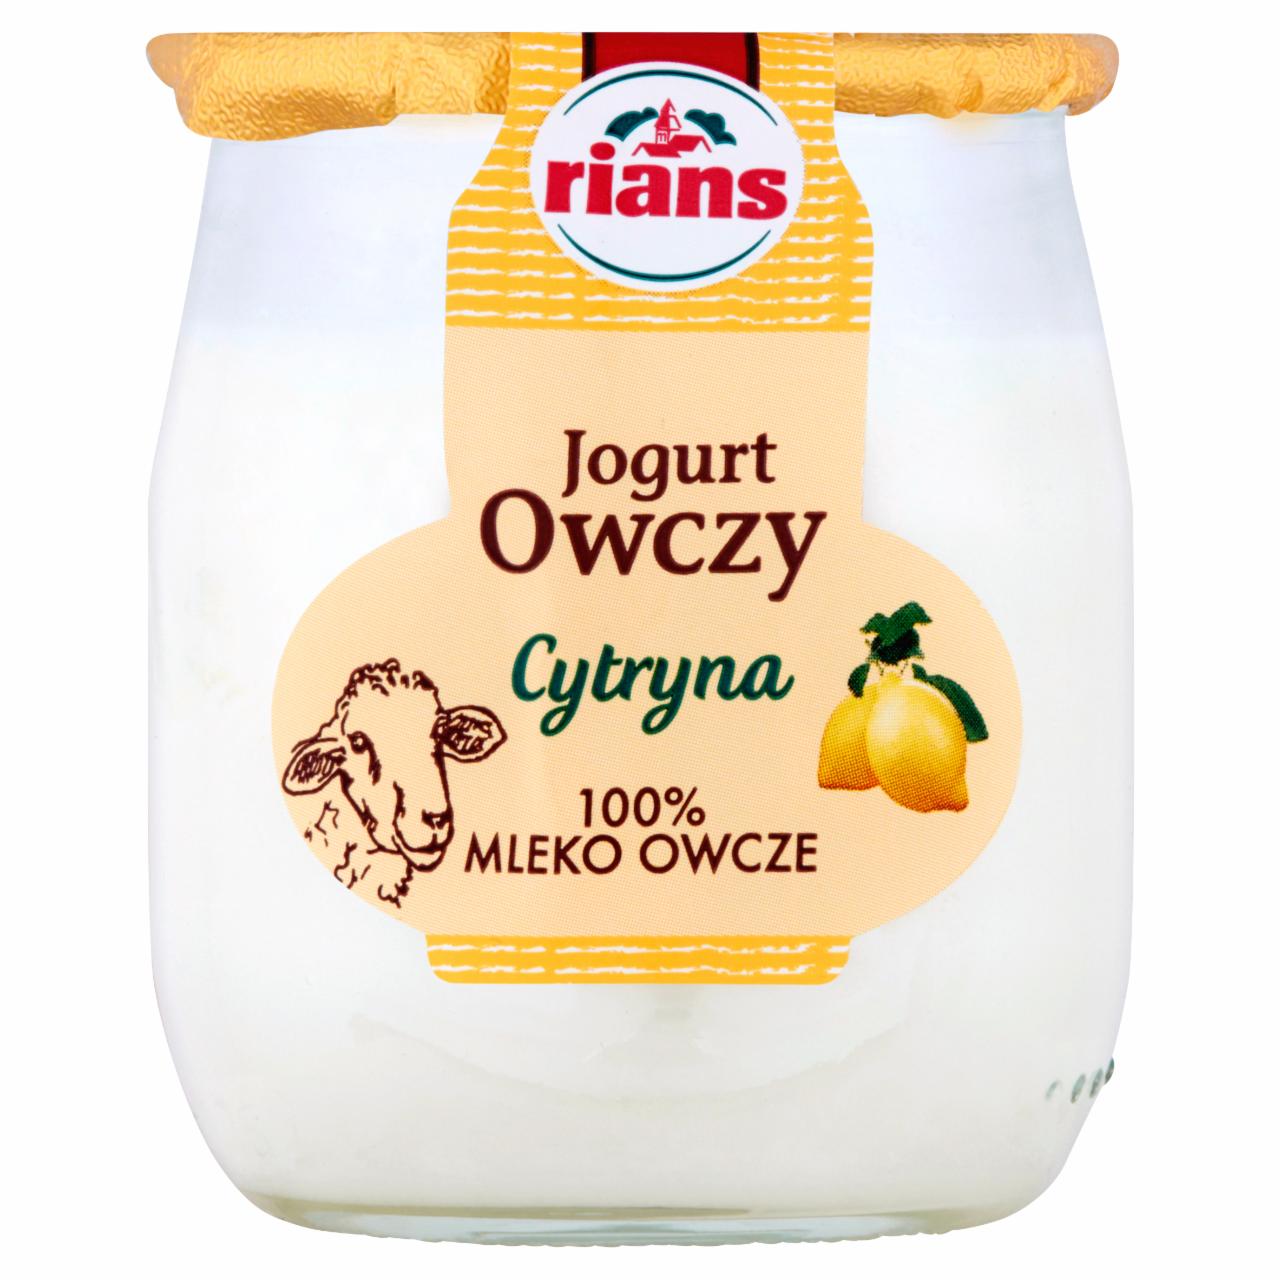 Zdjęcia - Jogurt owczy cytryna 115 g Rians